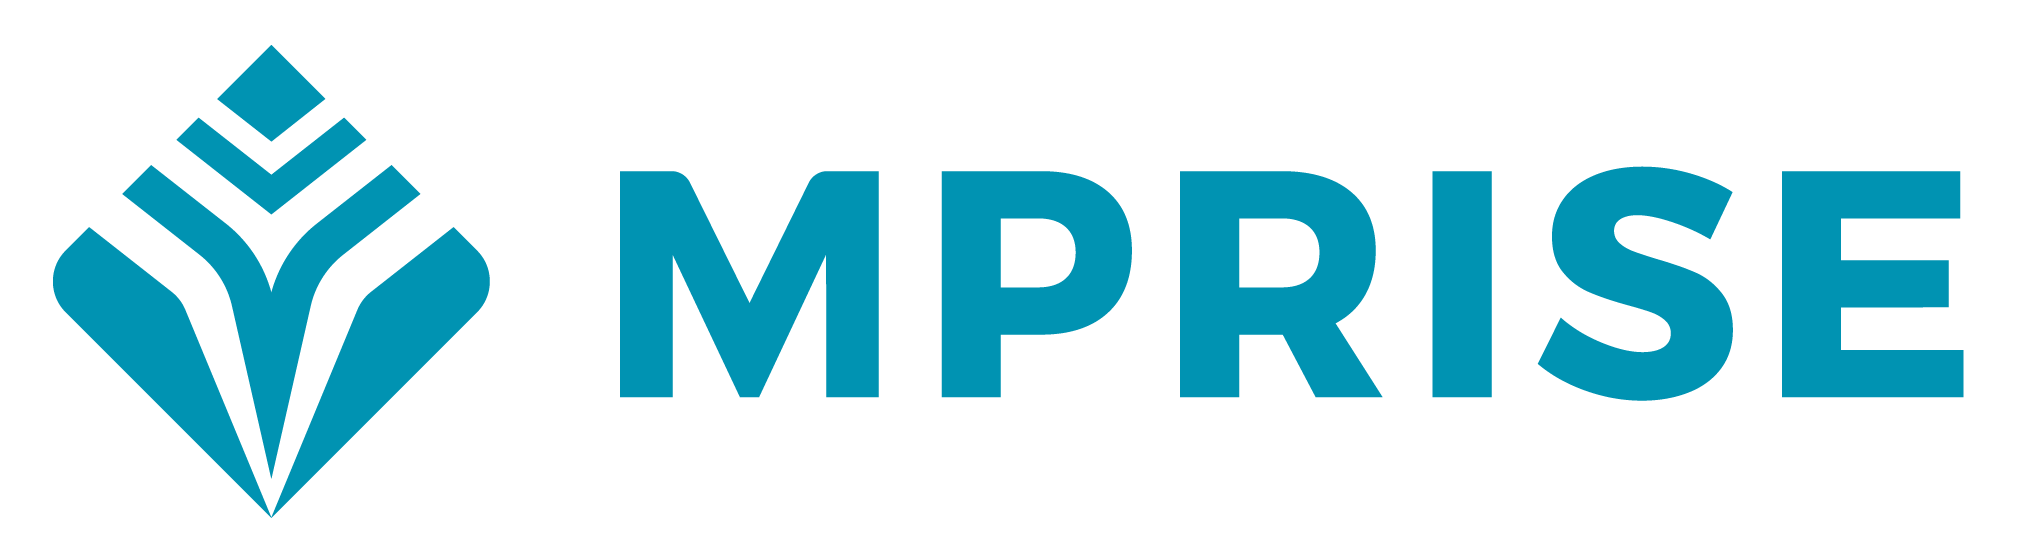 MPRISE-logo-2019-[RGB]